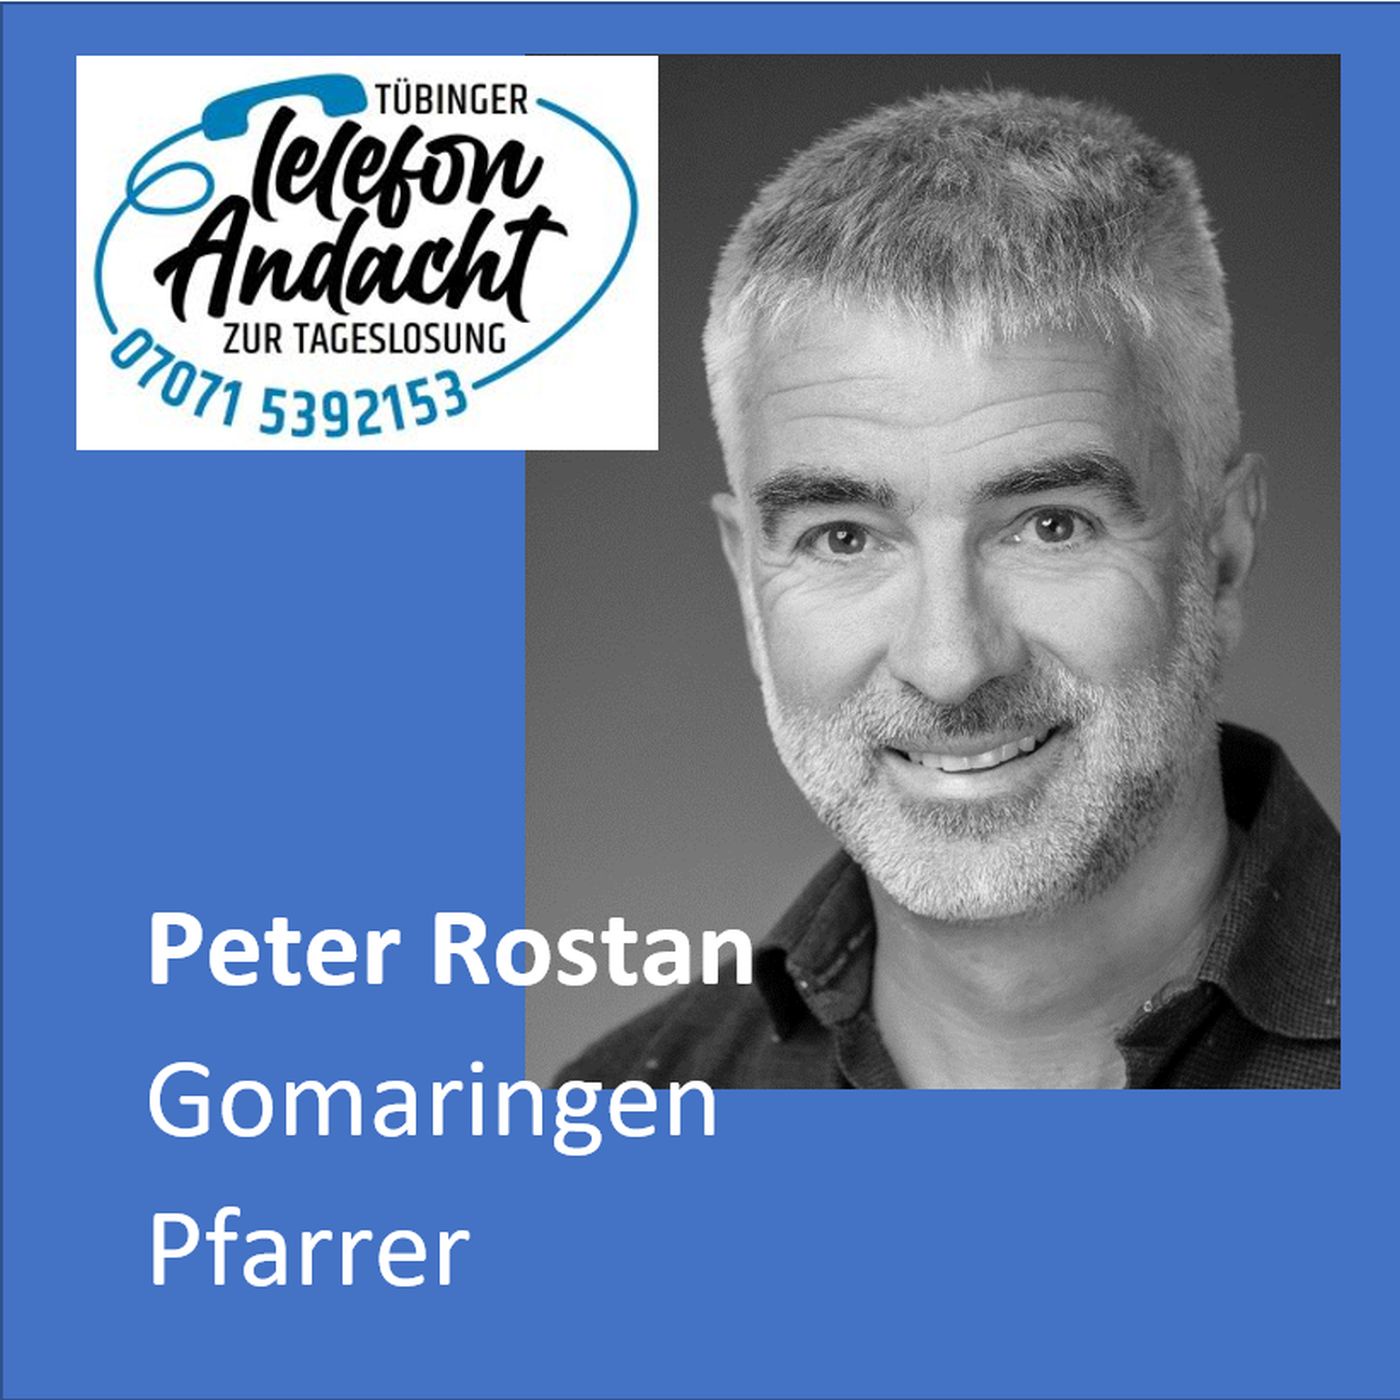 24 07 24 Peter Rostan